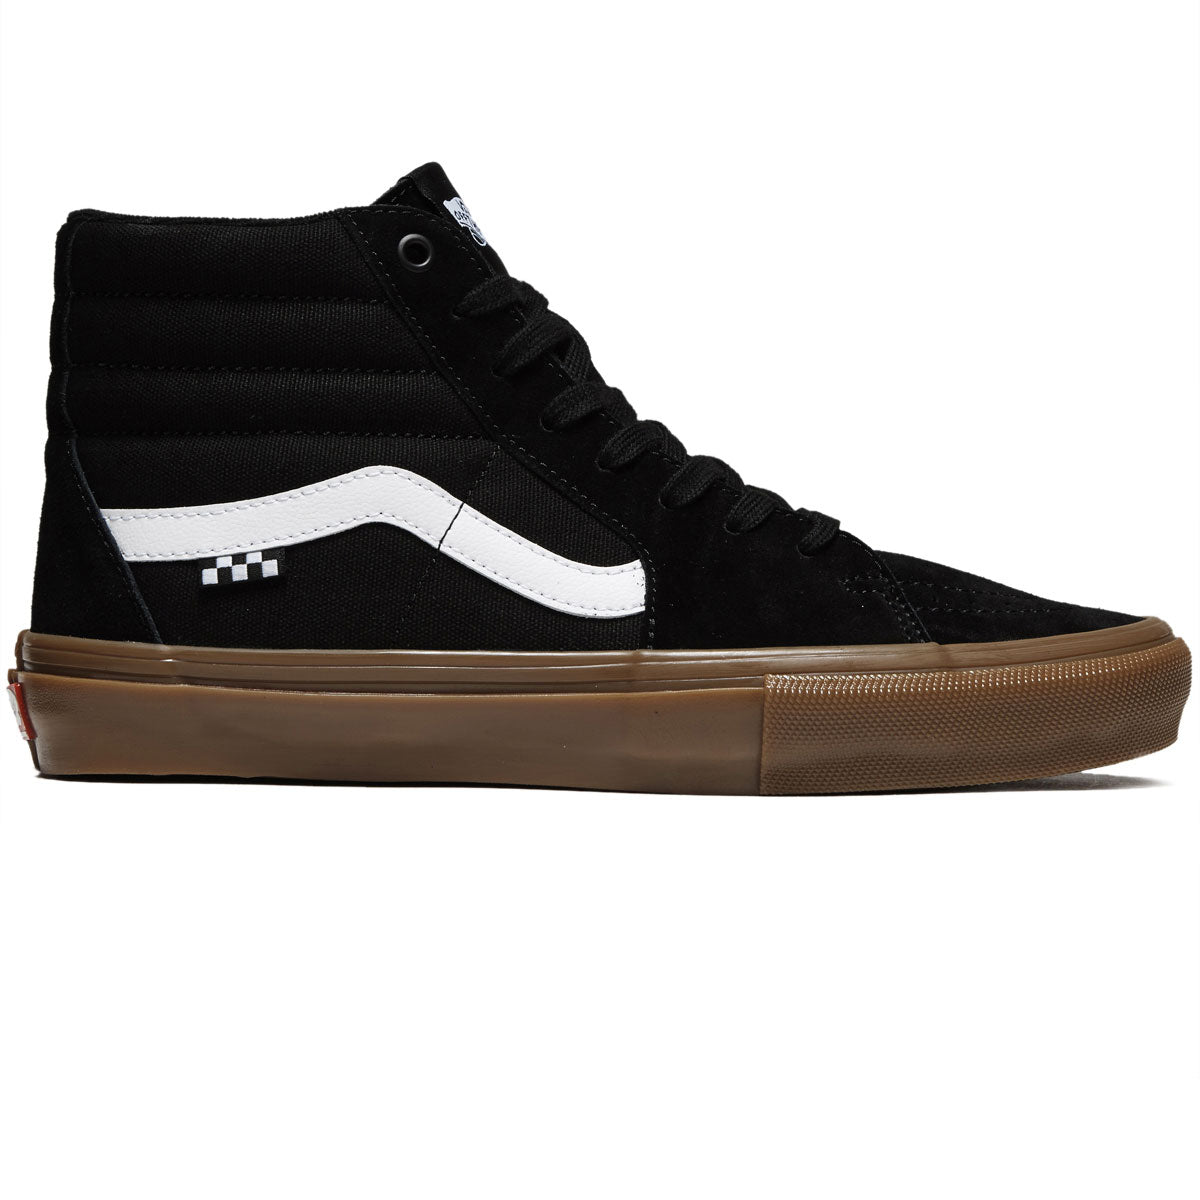 Vans Skate Sk8-hi Shoes - Black/Gum image 1